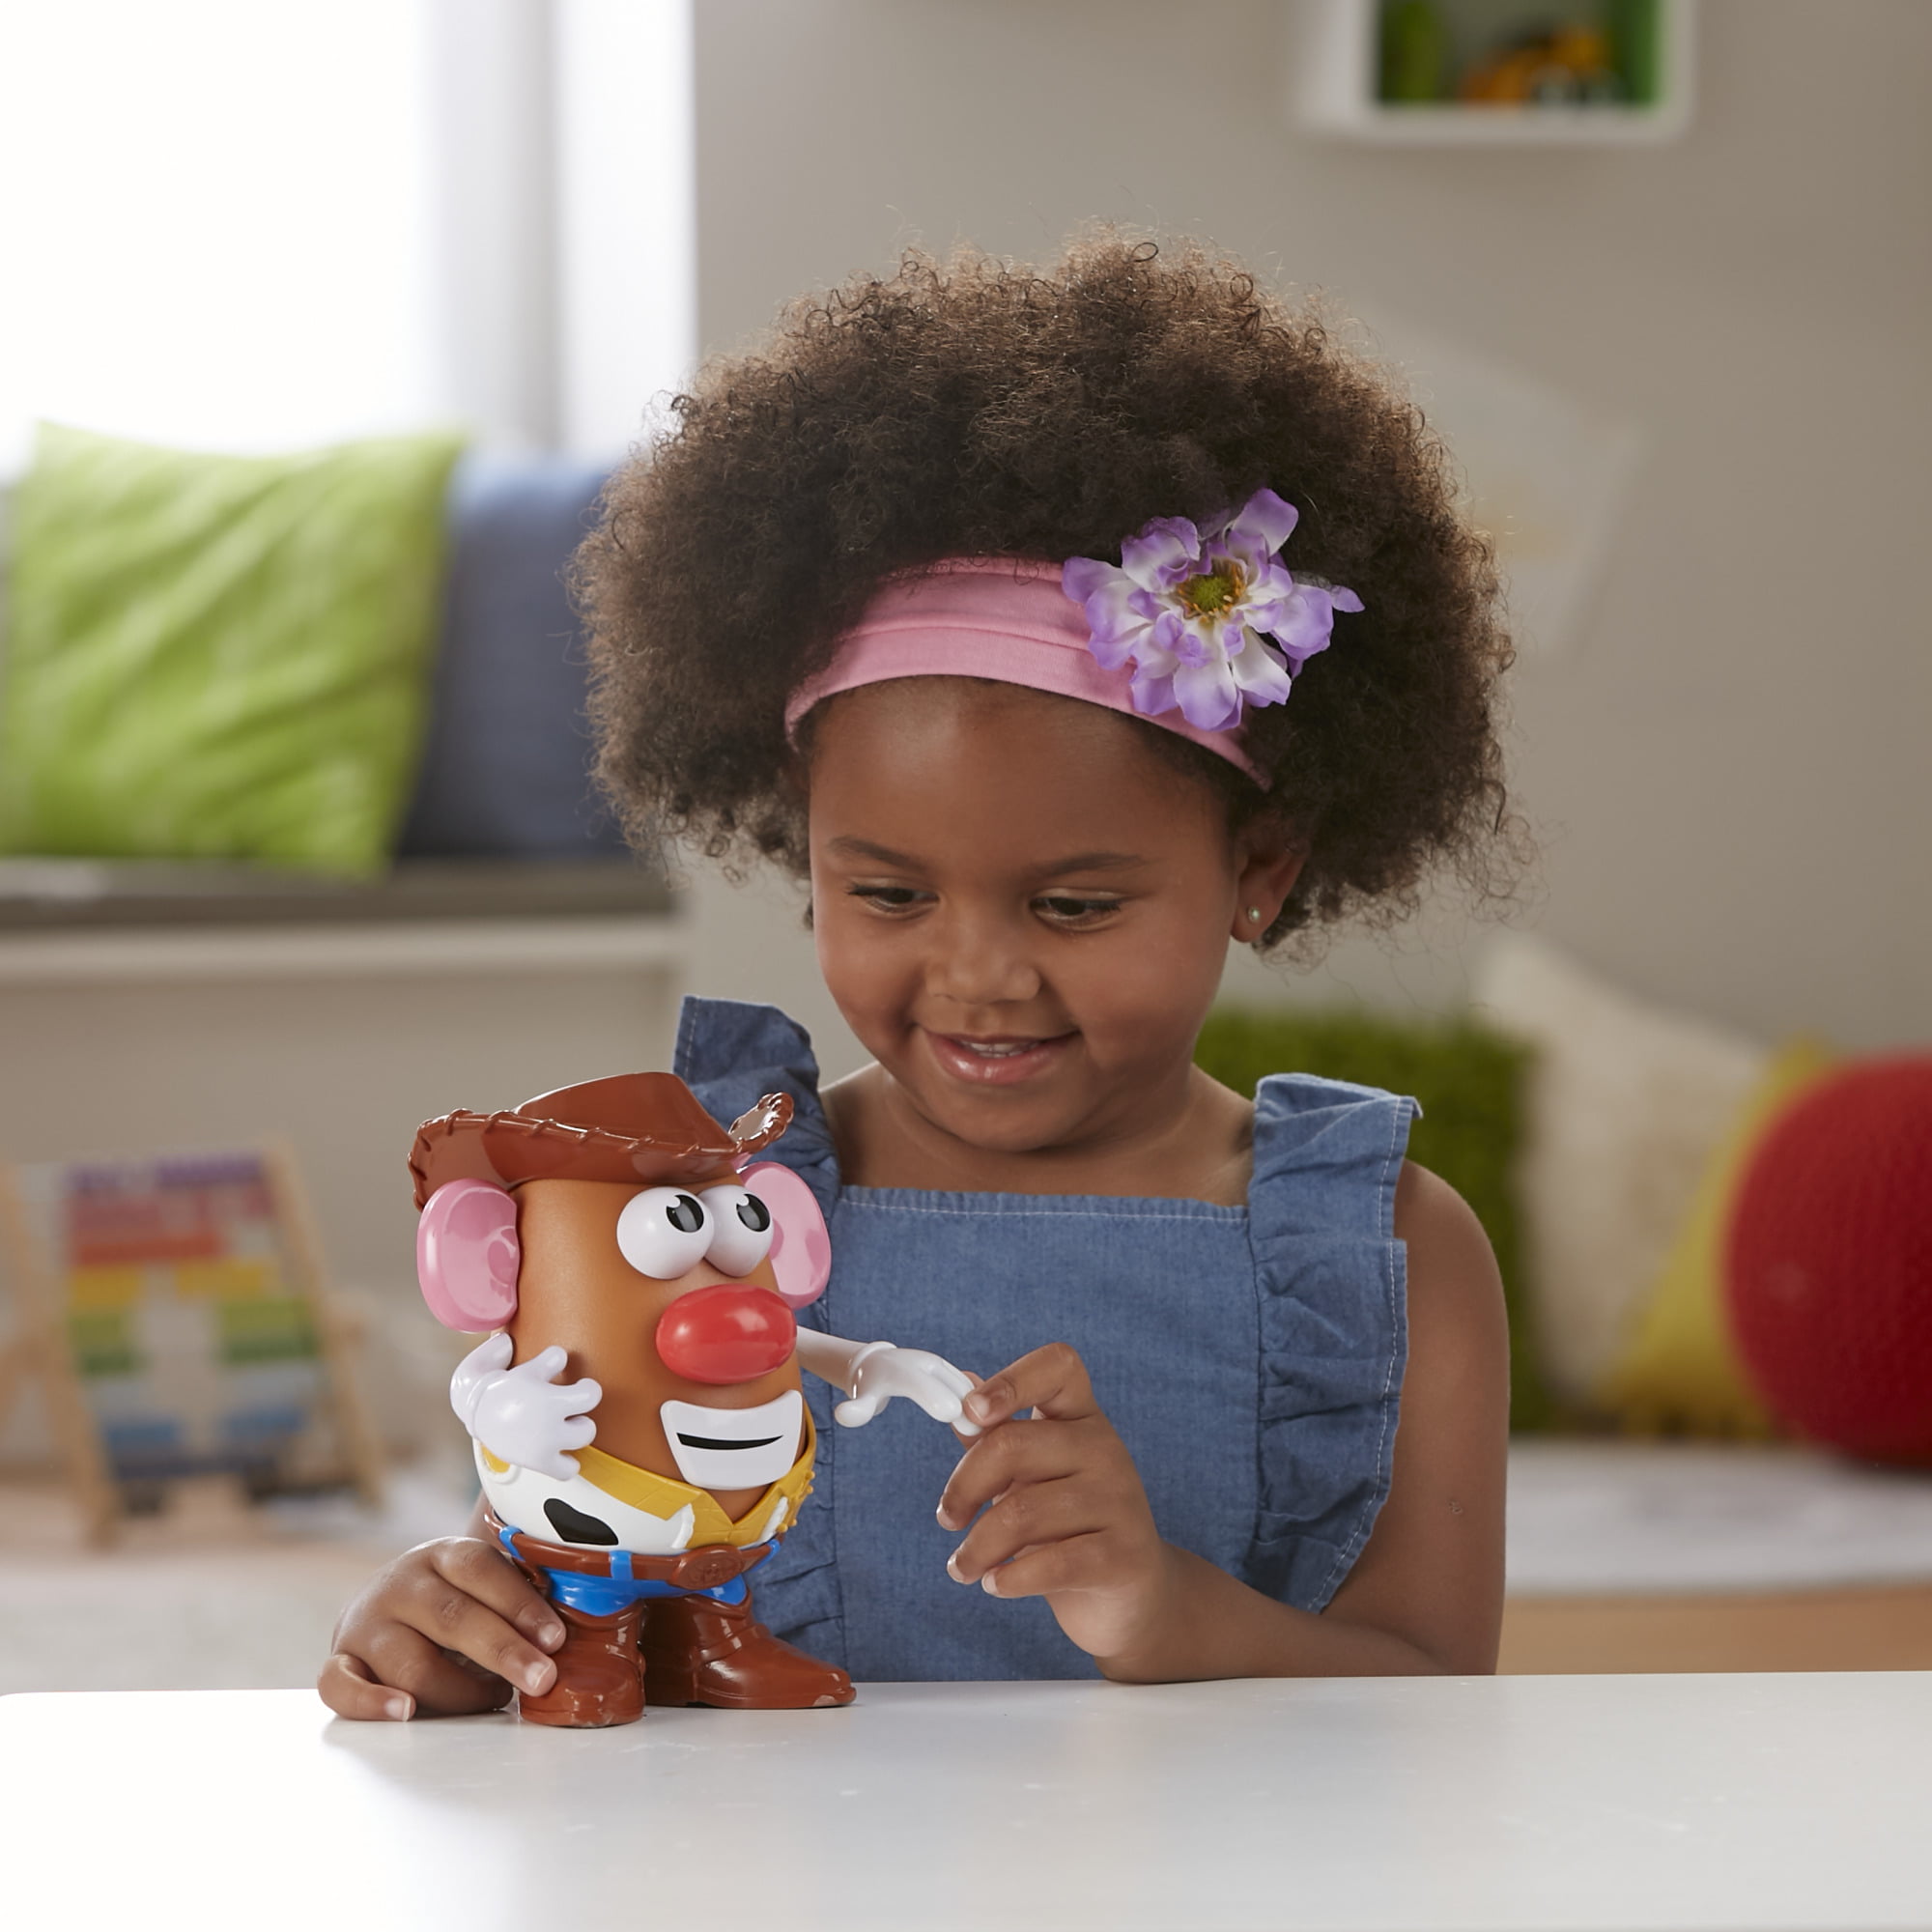 Mr. Potato Head Disney/Pixar Histoire de jouets 4 - Figurine classique Monsieur  Patate 